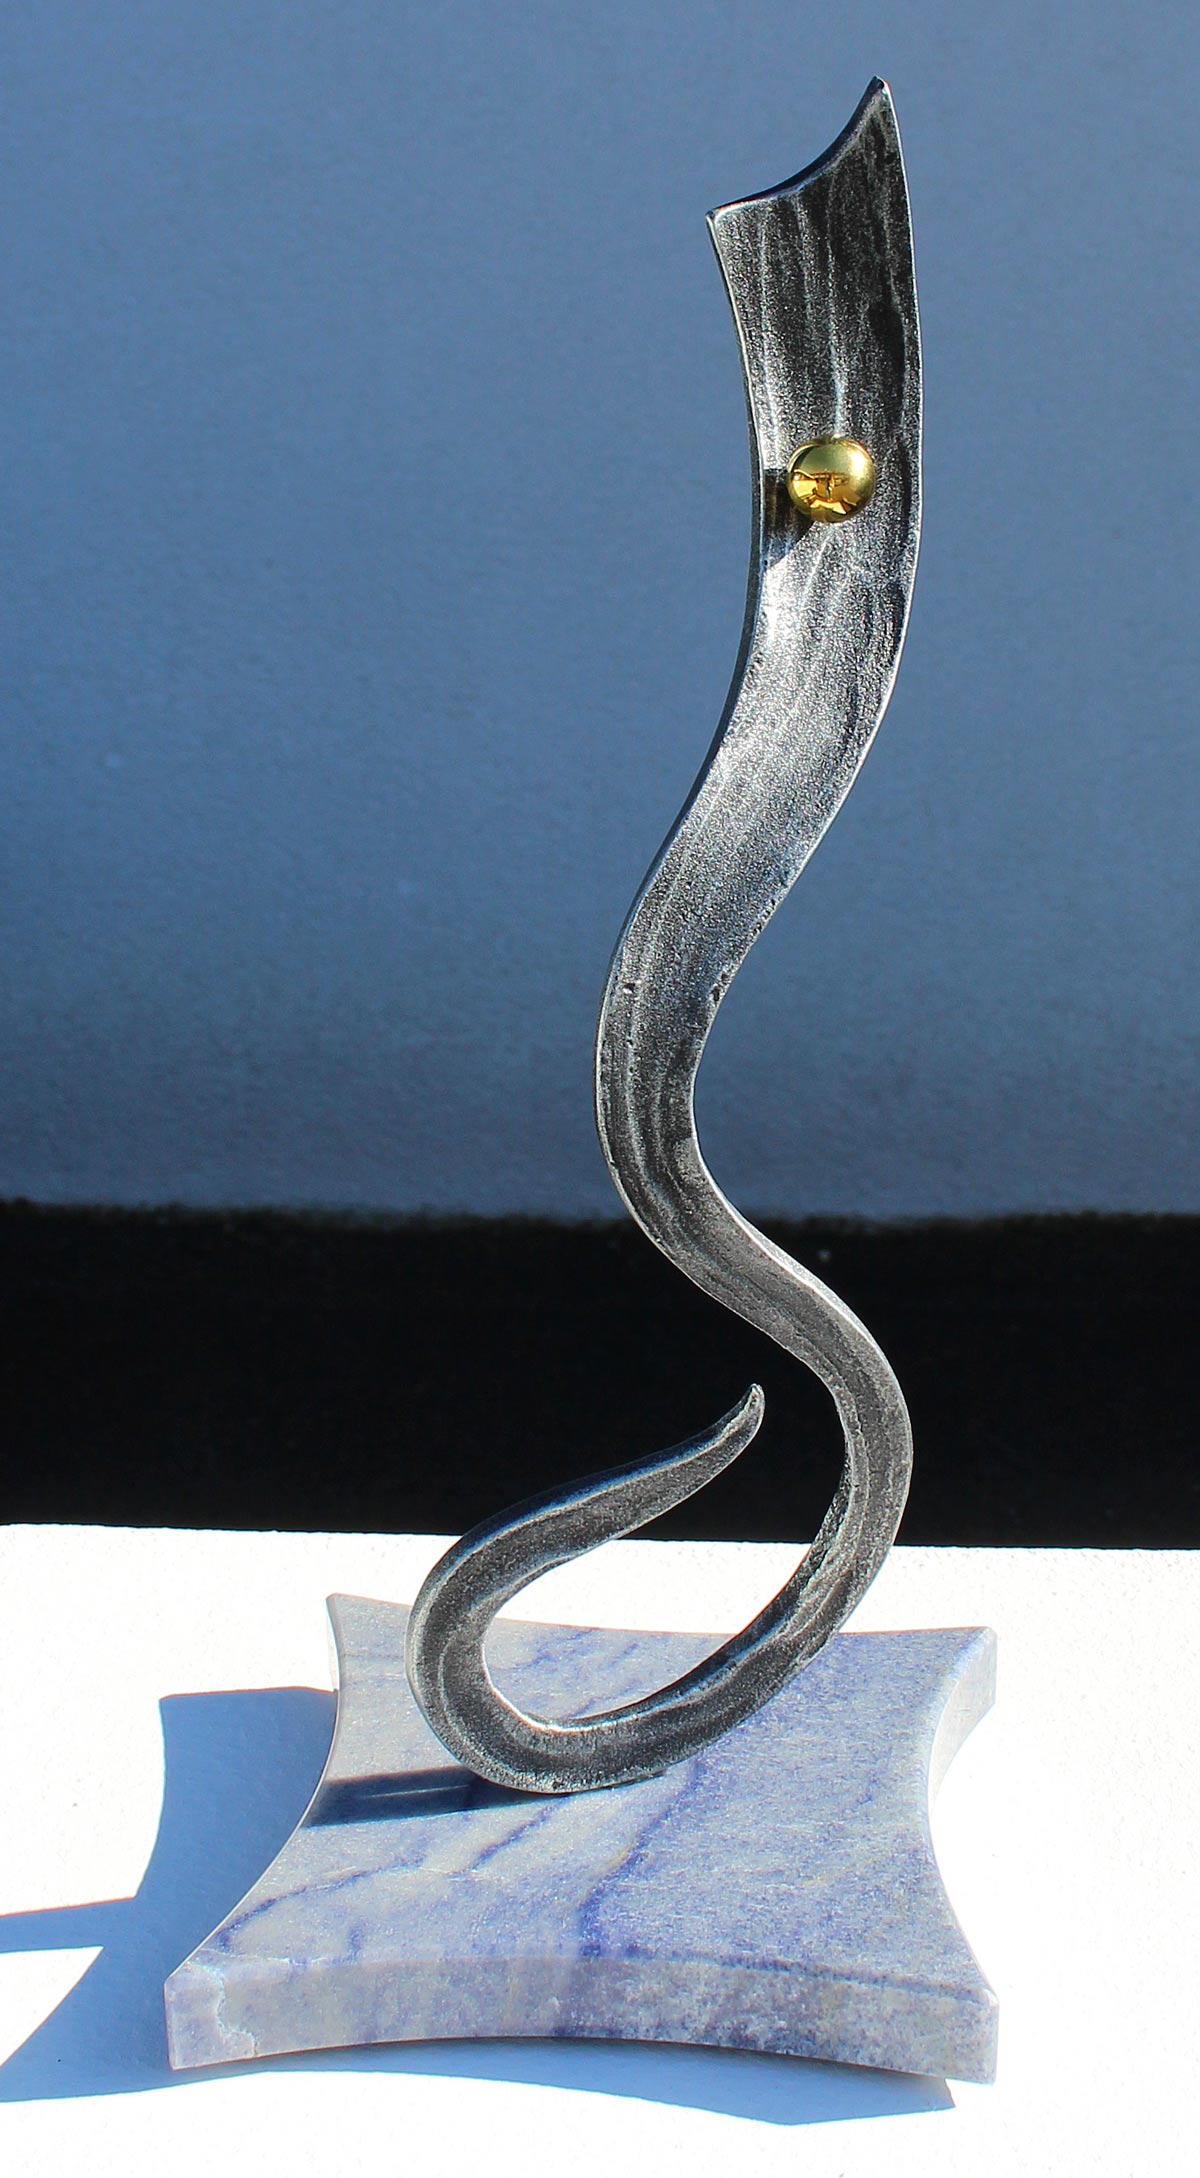 Metall auf edlem Quarzit Azul - Preis: CHF 1'200.00